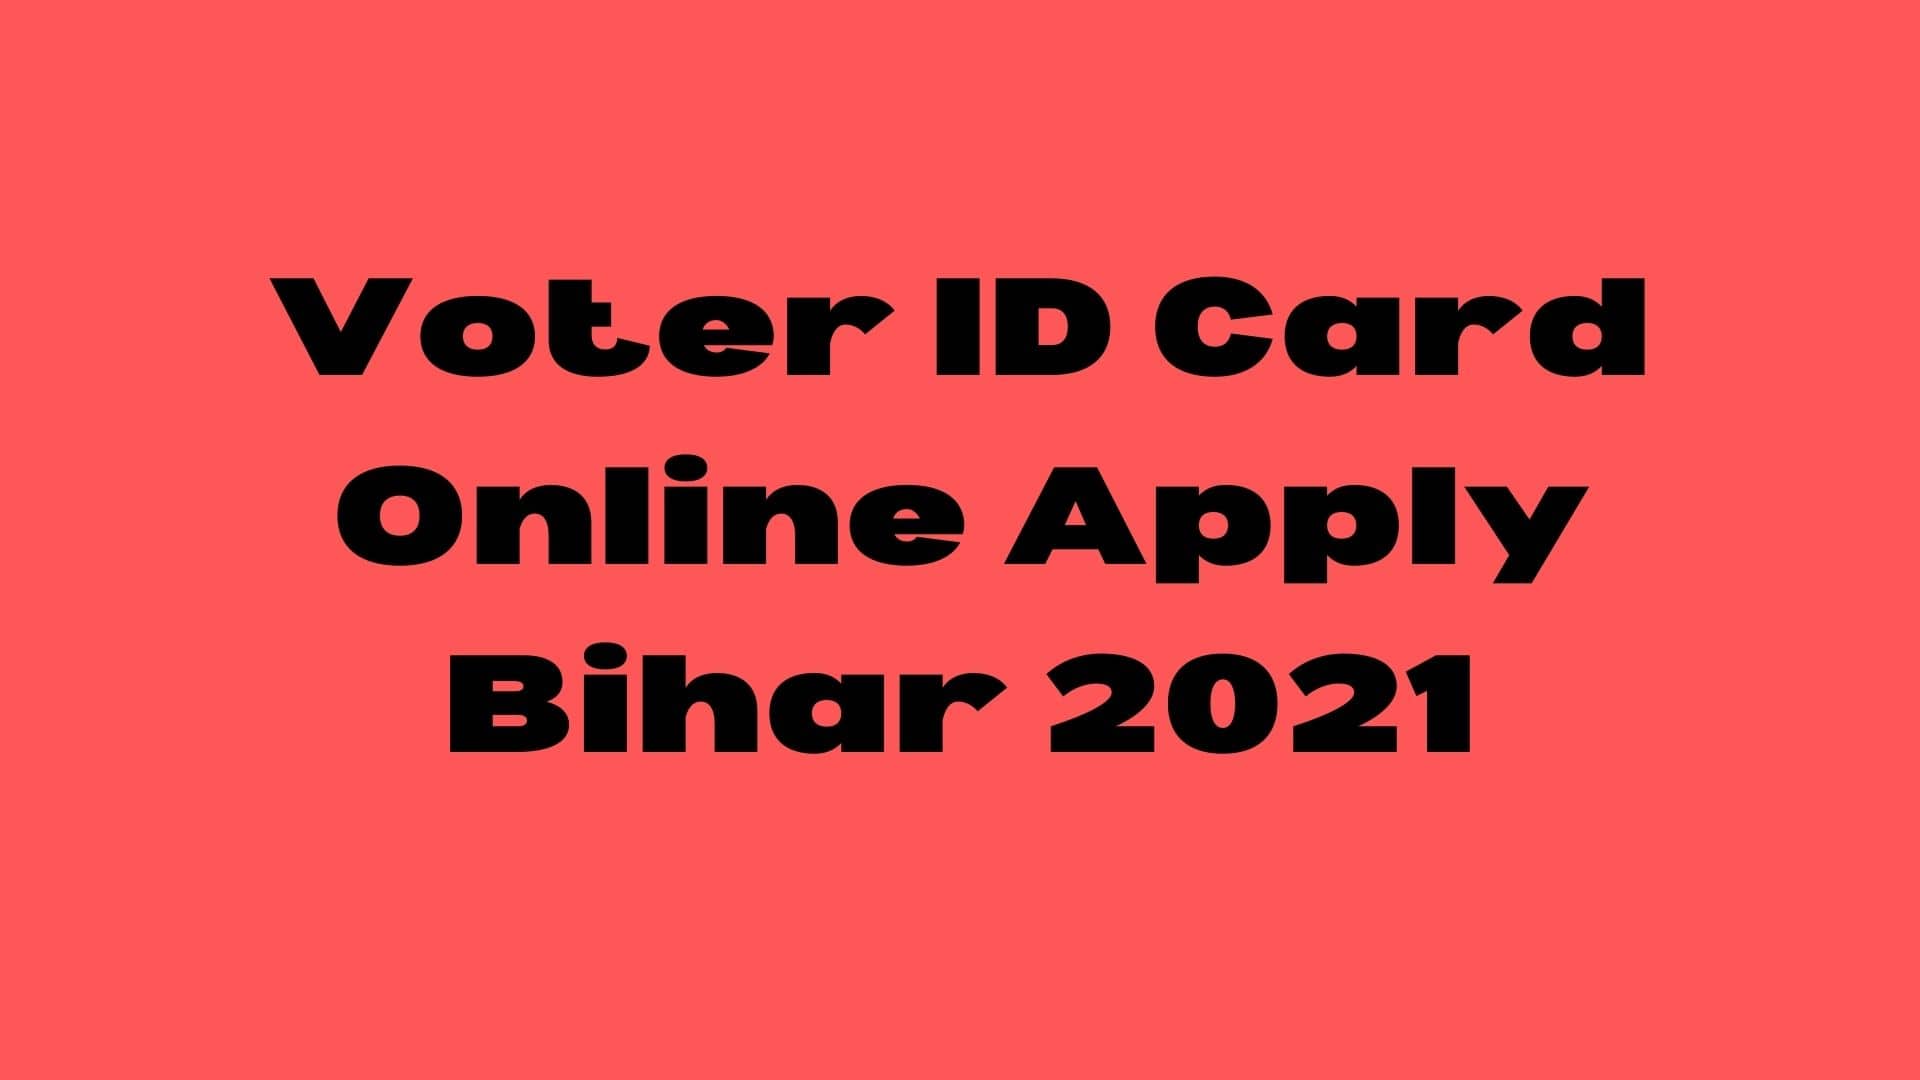 Voter ID Card Online Apply Bihar 2021